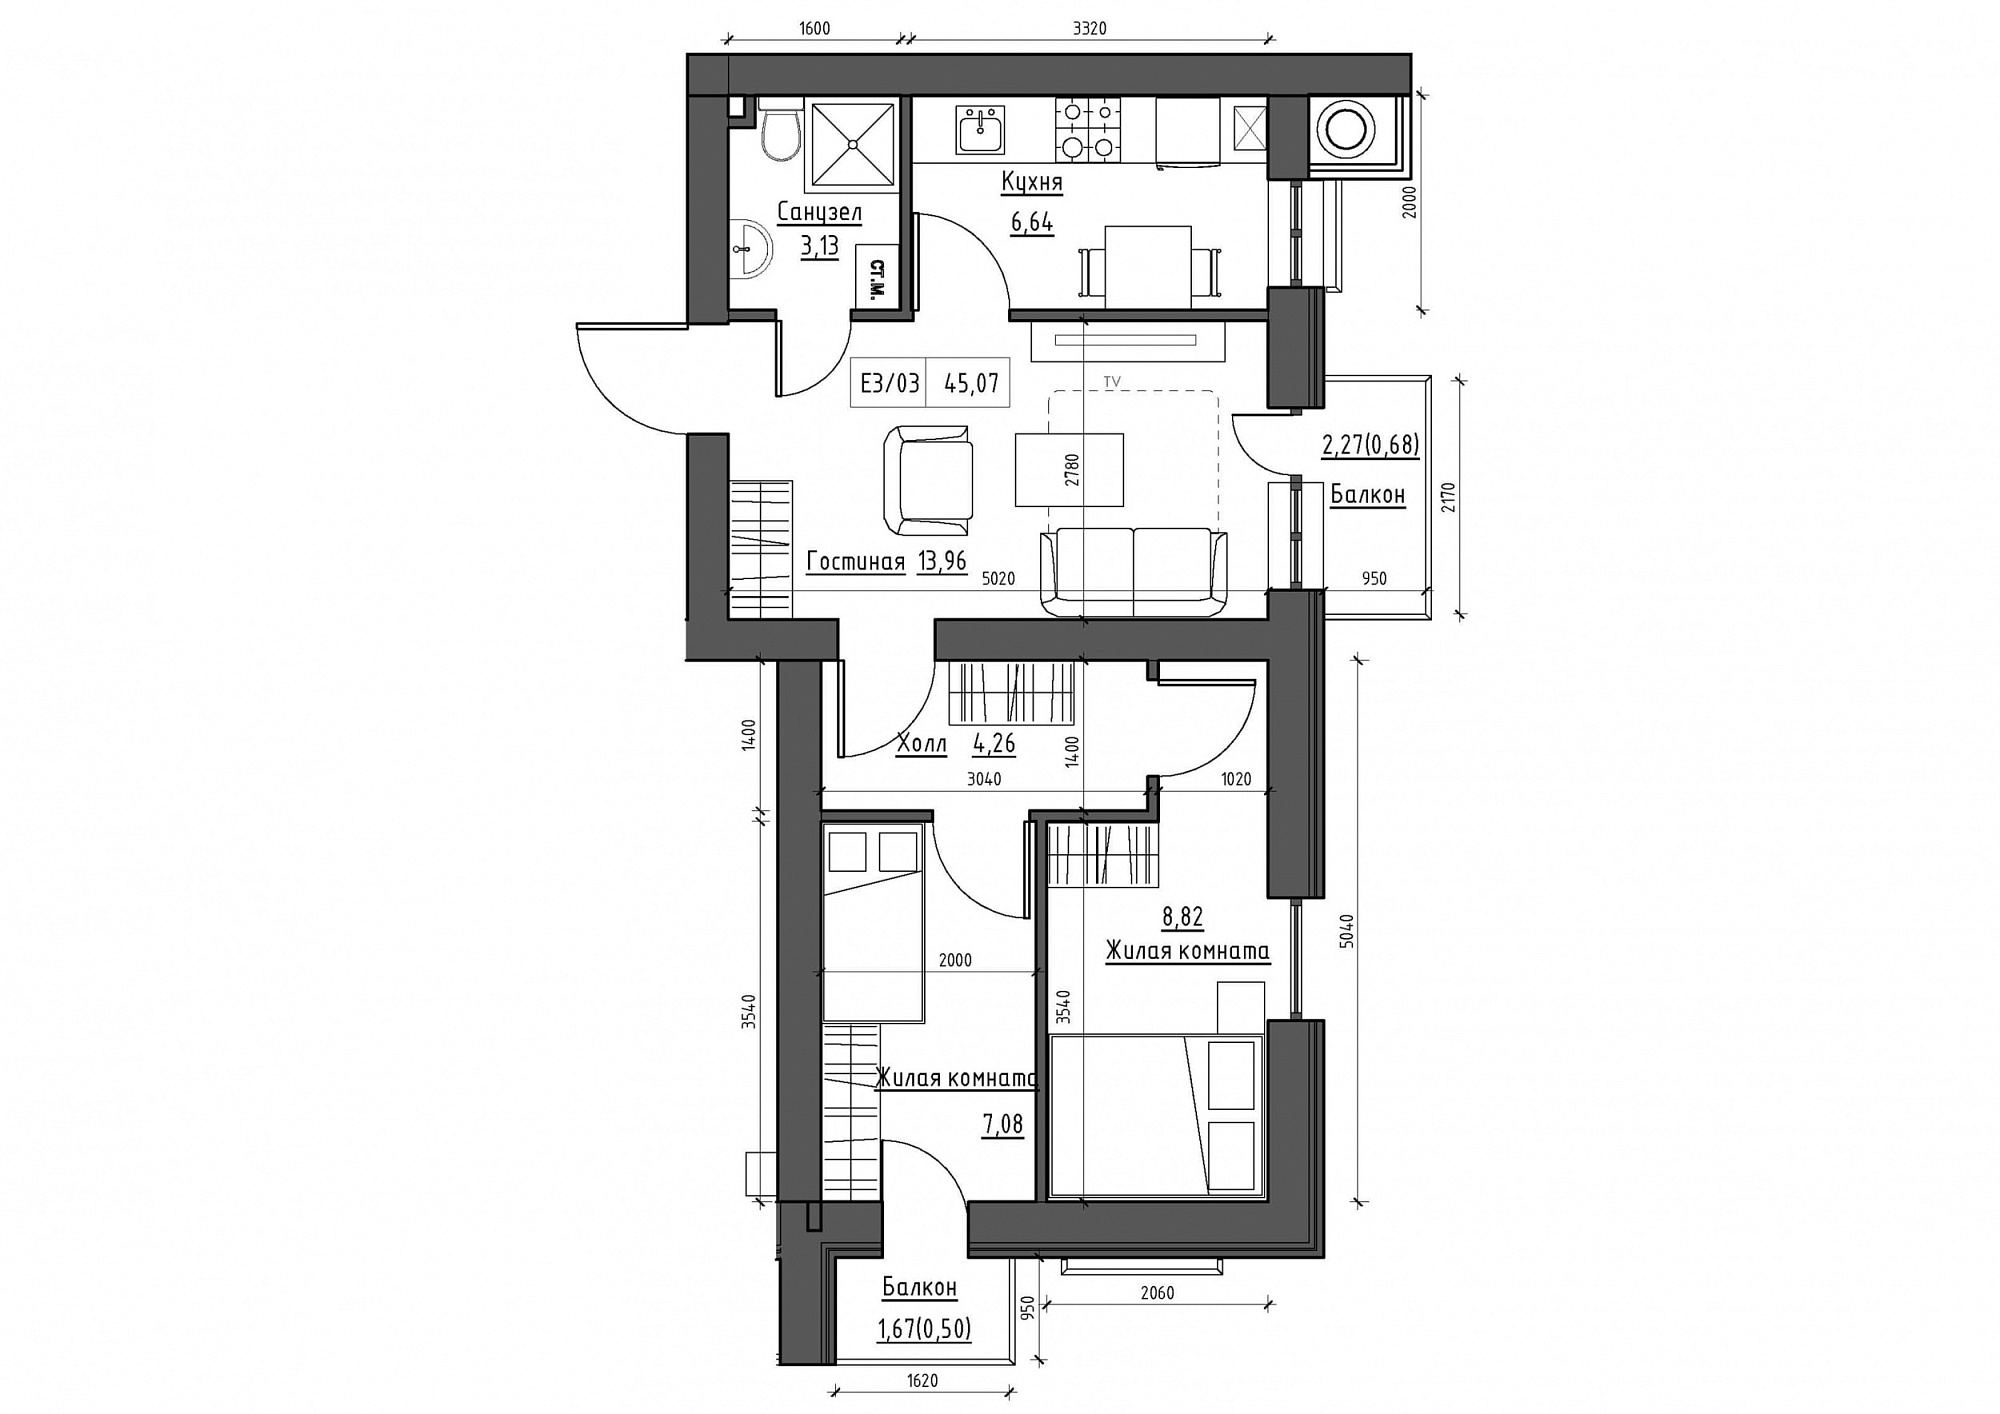 Планування 3-к квартира площею 45.07м2, KS-011-05/0008.